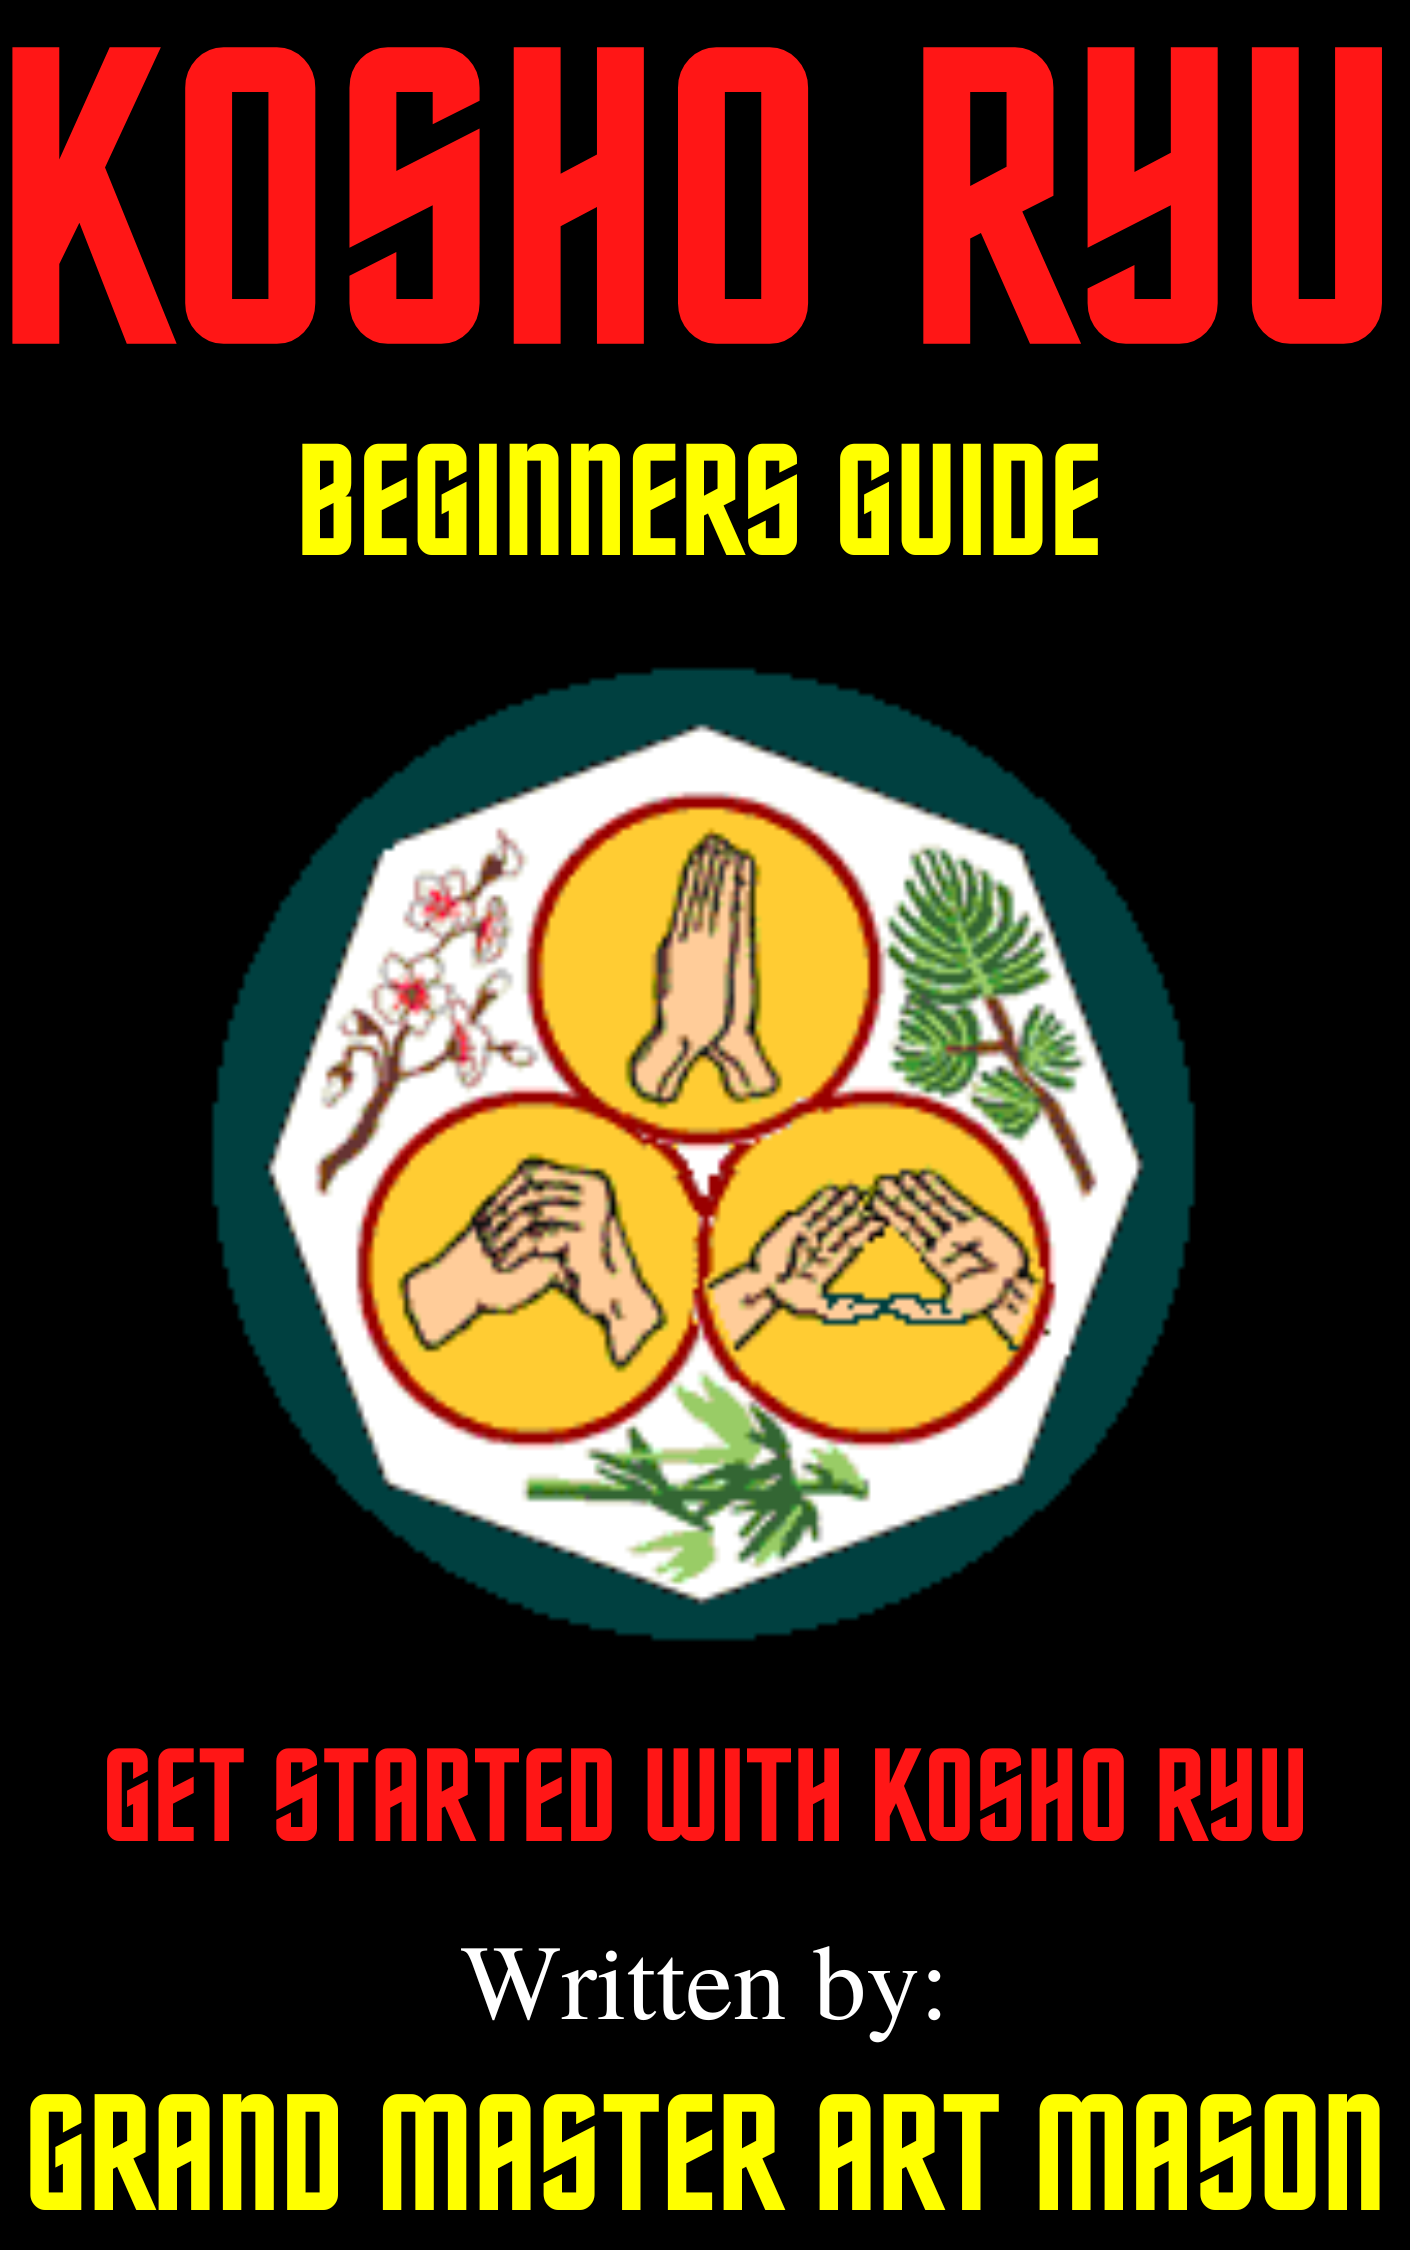 * Kosho Ryu Beginners Guide